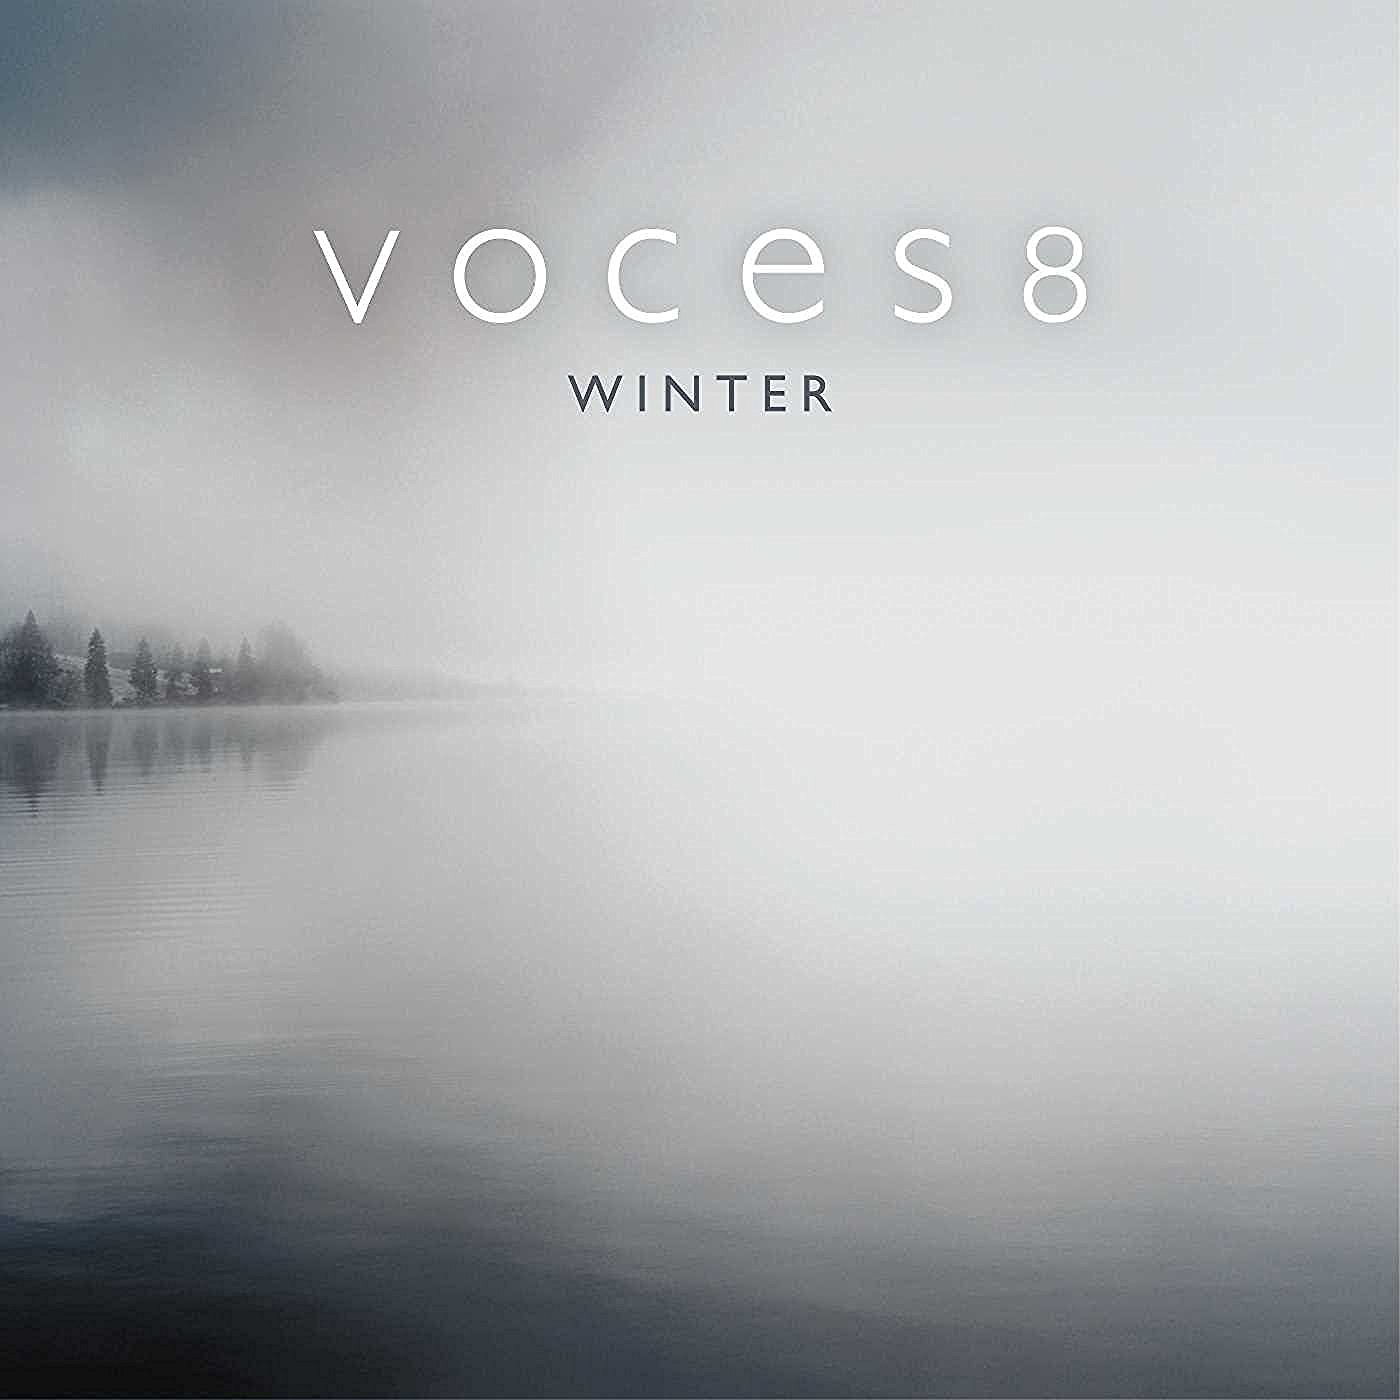 Voces8 - Winter (2016) [FLAC 24bit/96kHz]